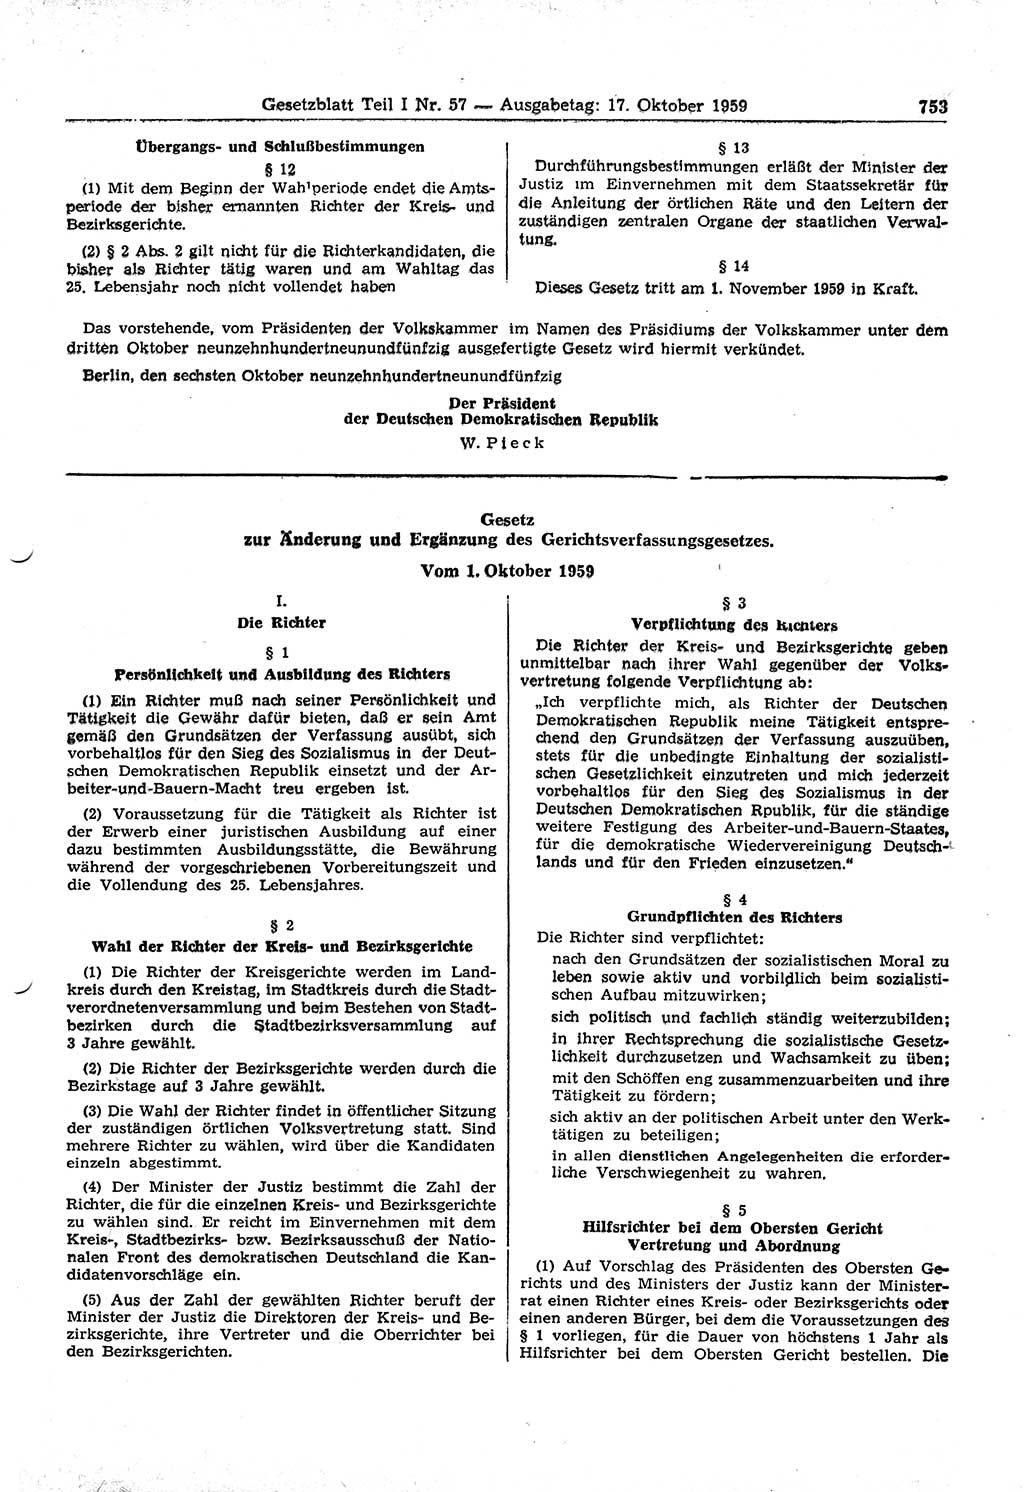 Gesetzblatt (GBl.) der Deutschen Demokratischen Republik (DDR) Teil Ⅰ 1959, Seite 753 (GBl. DDR Ⅰ 1959, S. 753)